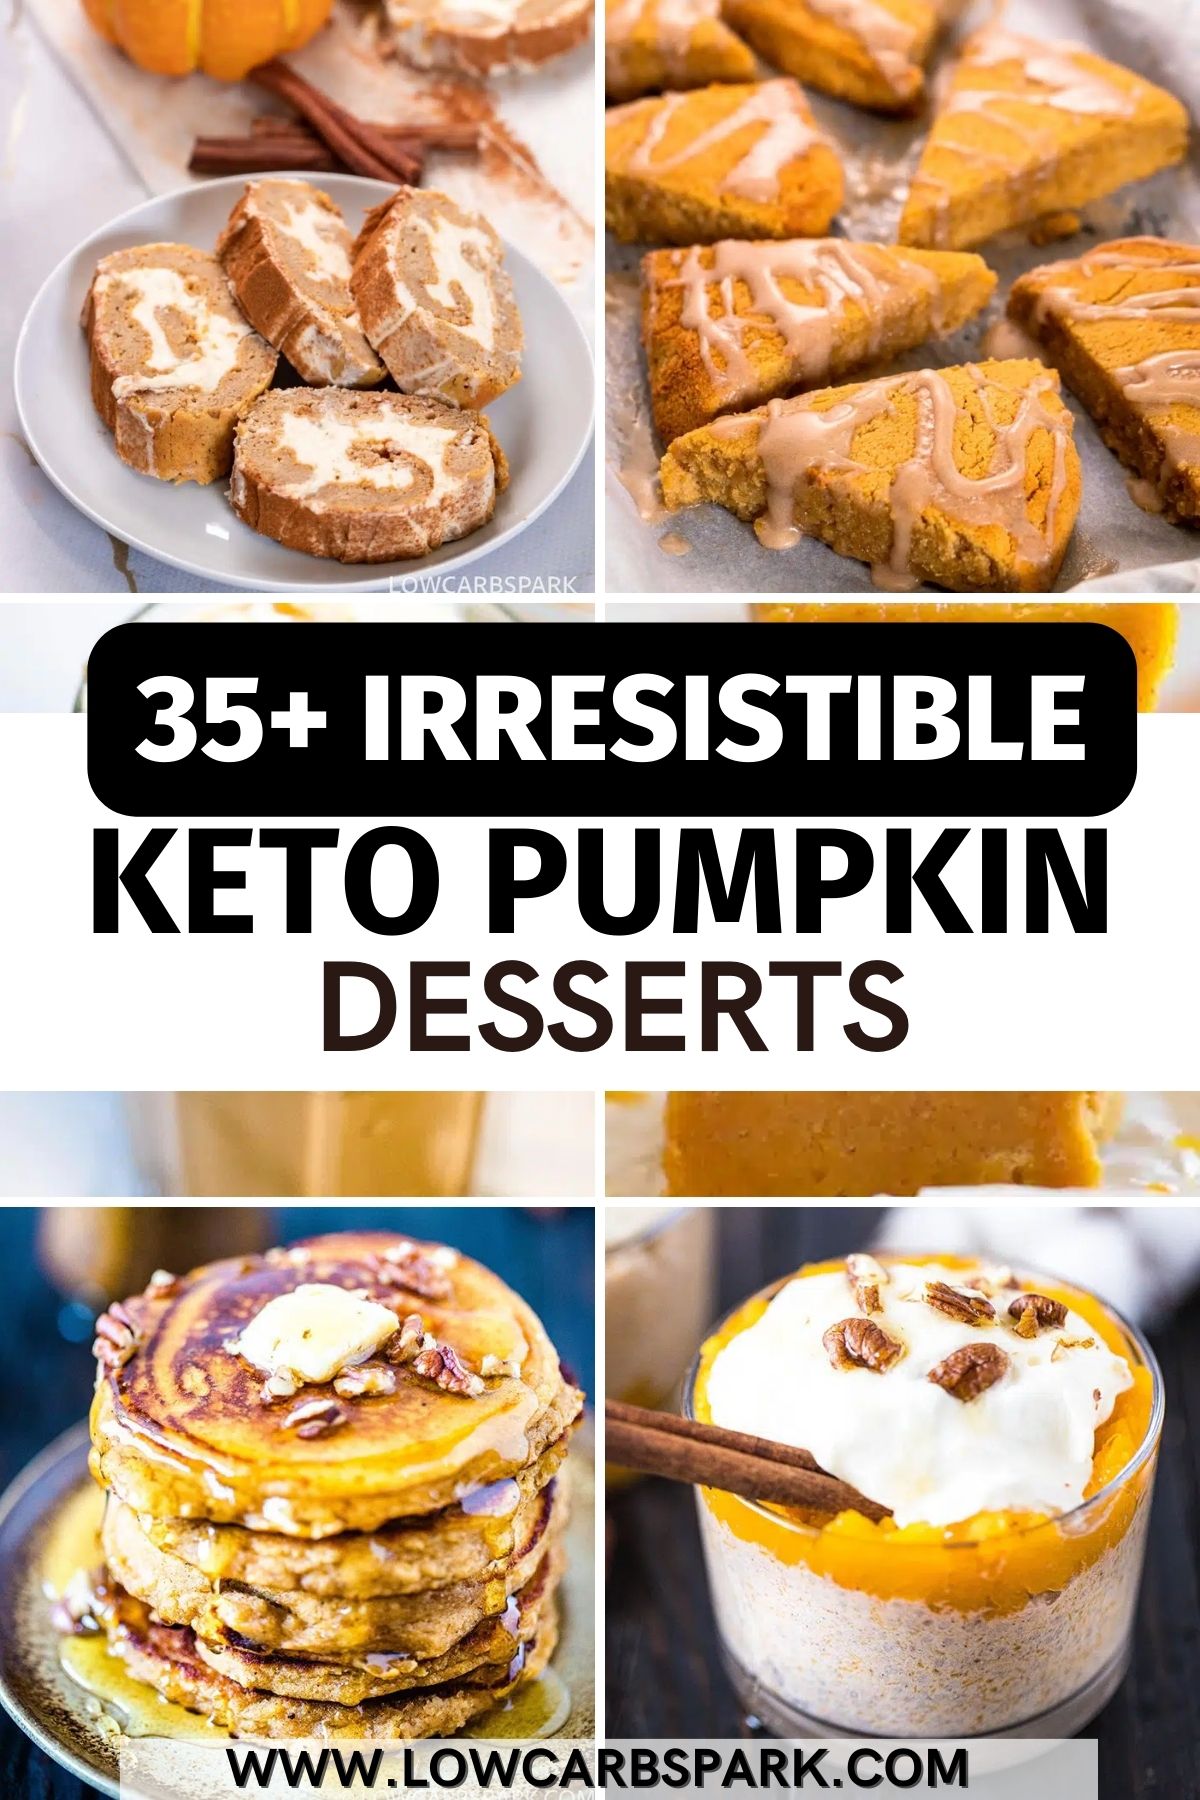 35+ Irresistible Keto Pumpkin Desserts